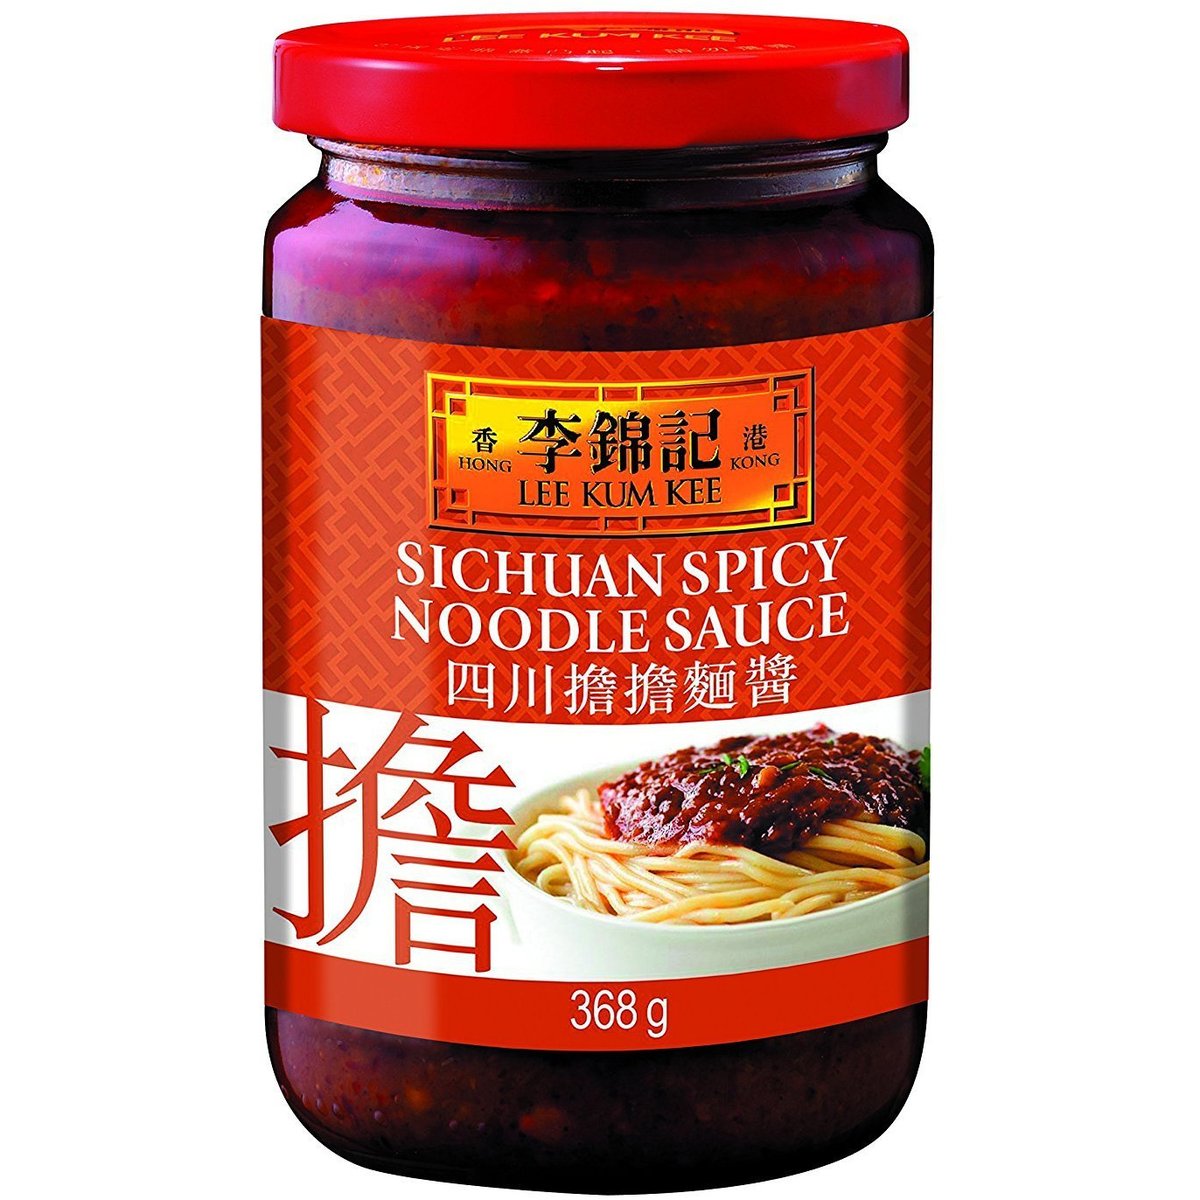 LKK Sichuan Spicy Noodle Sauce-   368g